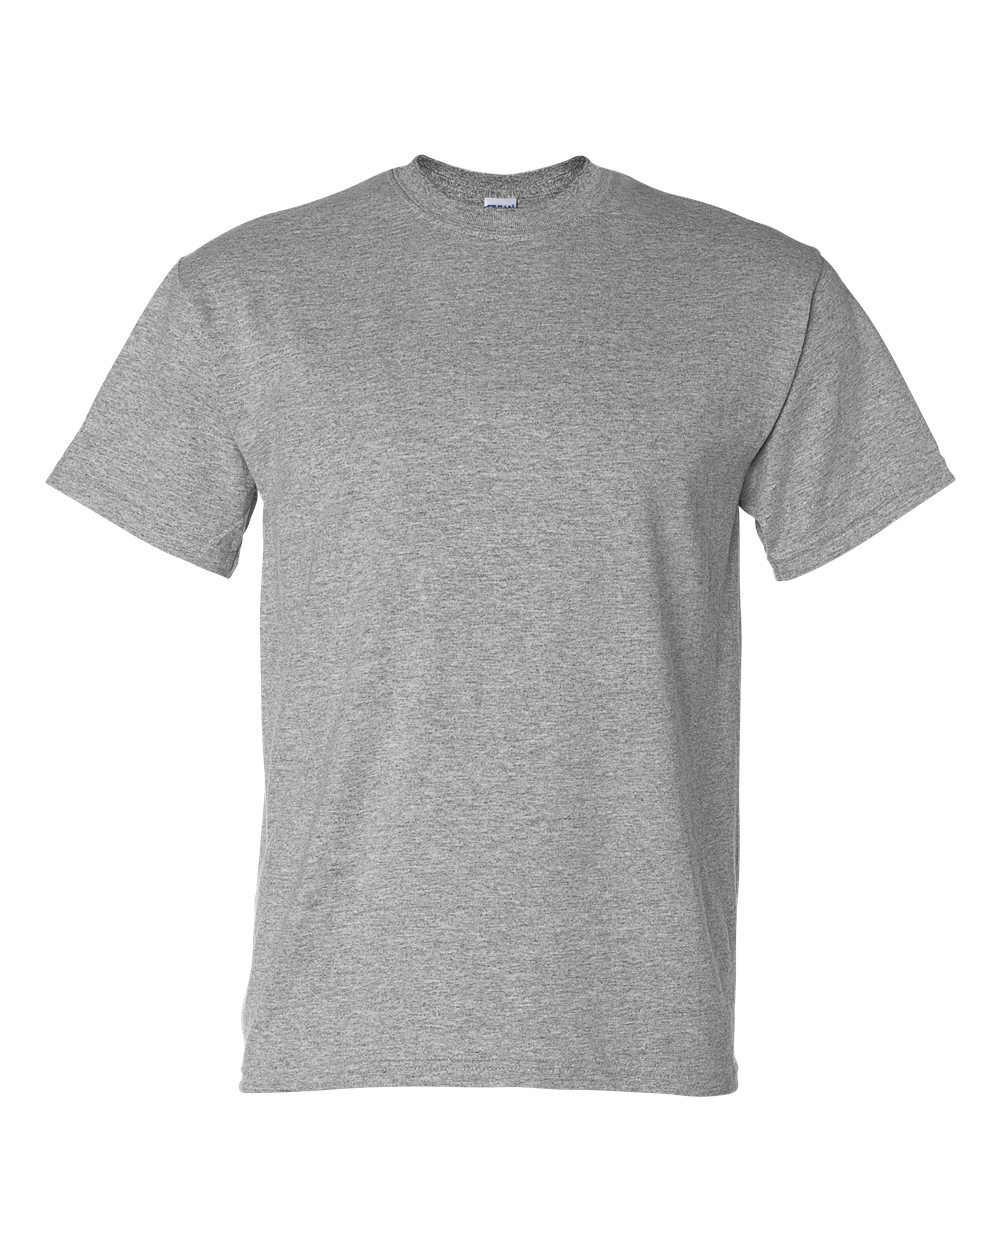 Gildan 8000 - DryBlend 50/50 Cotton/Poly T-Shirt $3.54 - T-Shirts